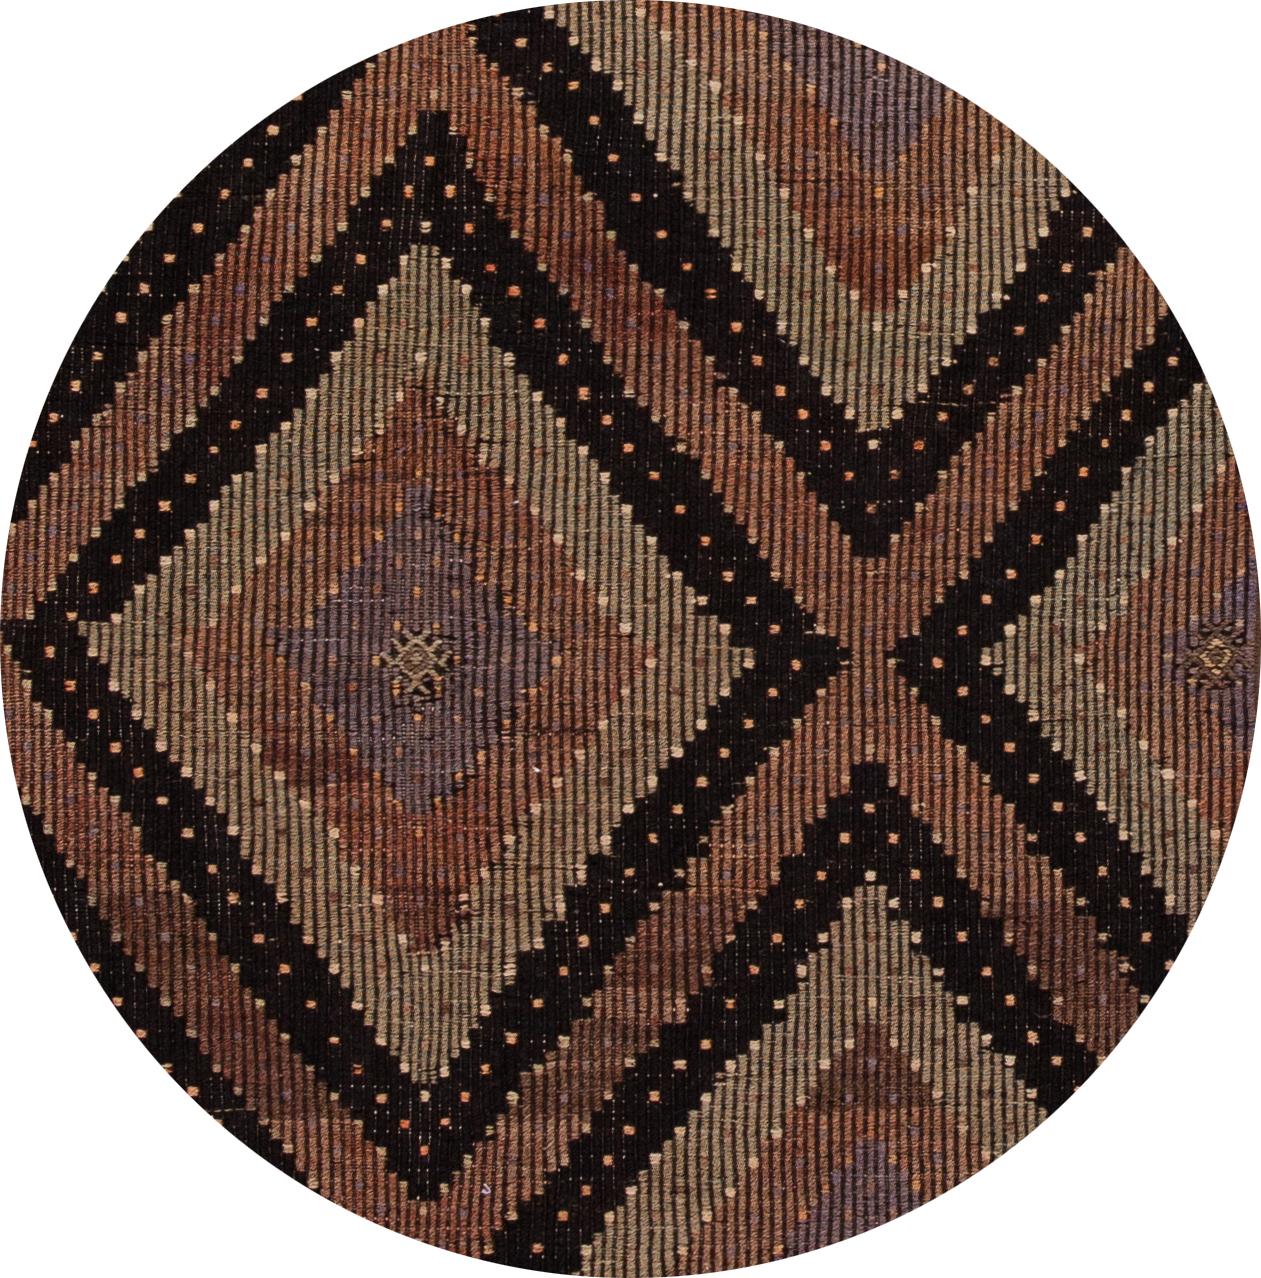 Schöner Sumakh-Teppich im Vintage-Stil mit mehrfarbigem All-Over-Motiv. Dieses Stück hat feine Details, tolle Farben und ein schönes geometrisches Design. Es wäre die perfekte Ergänzung für Ihr Zuhause.

Dieser Teppich misst 3'6 